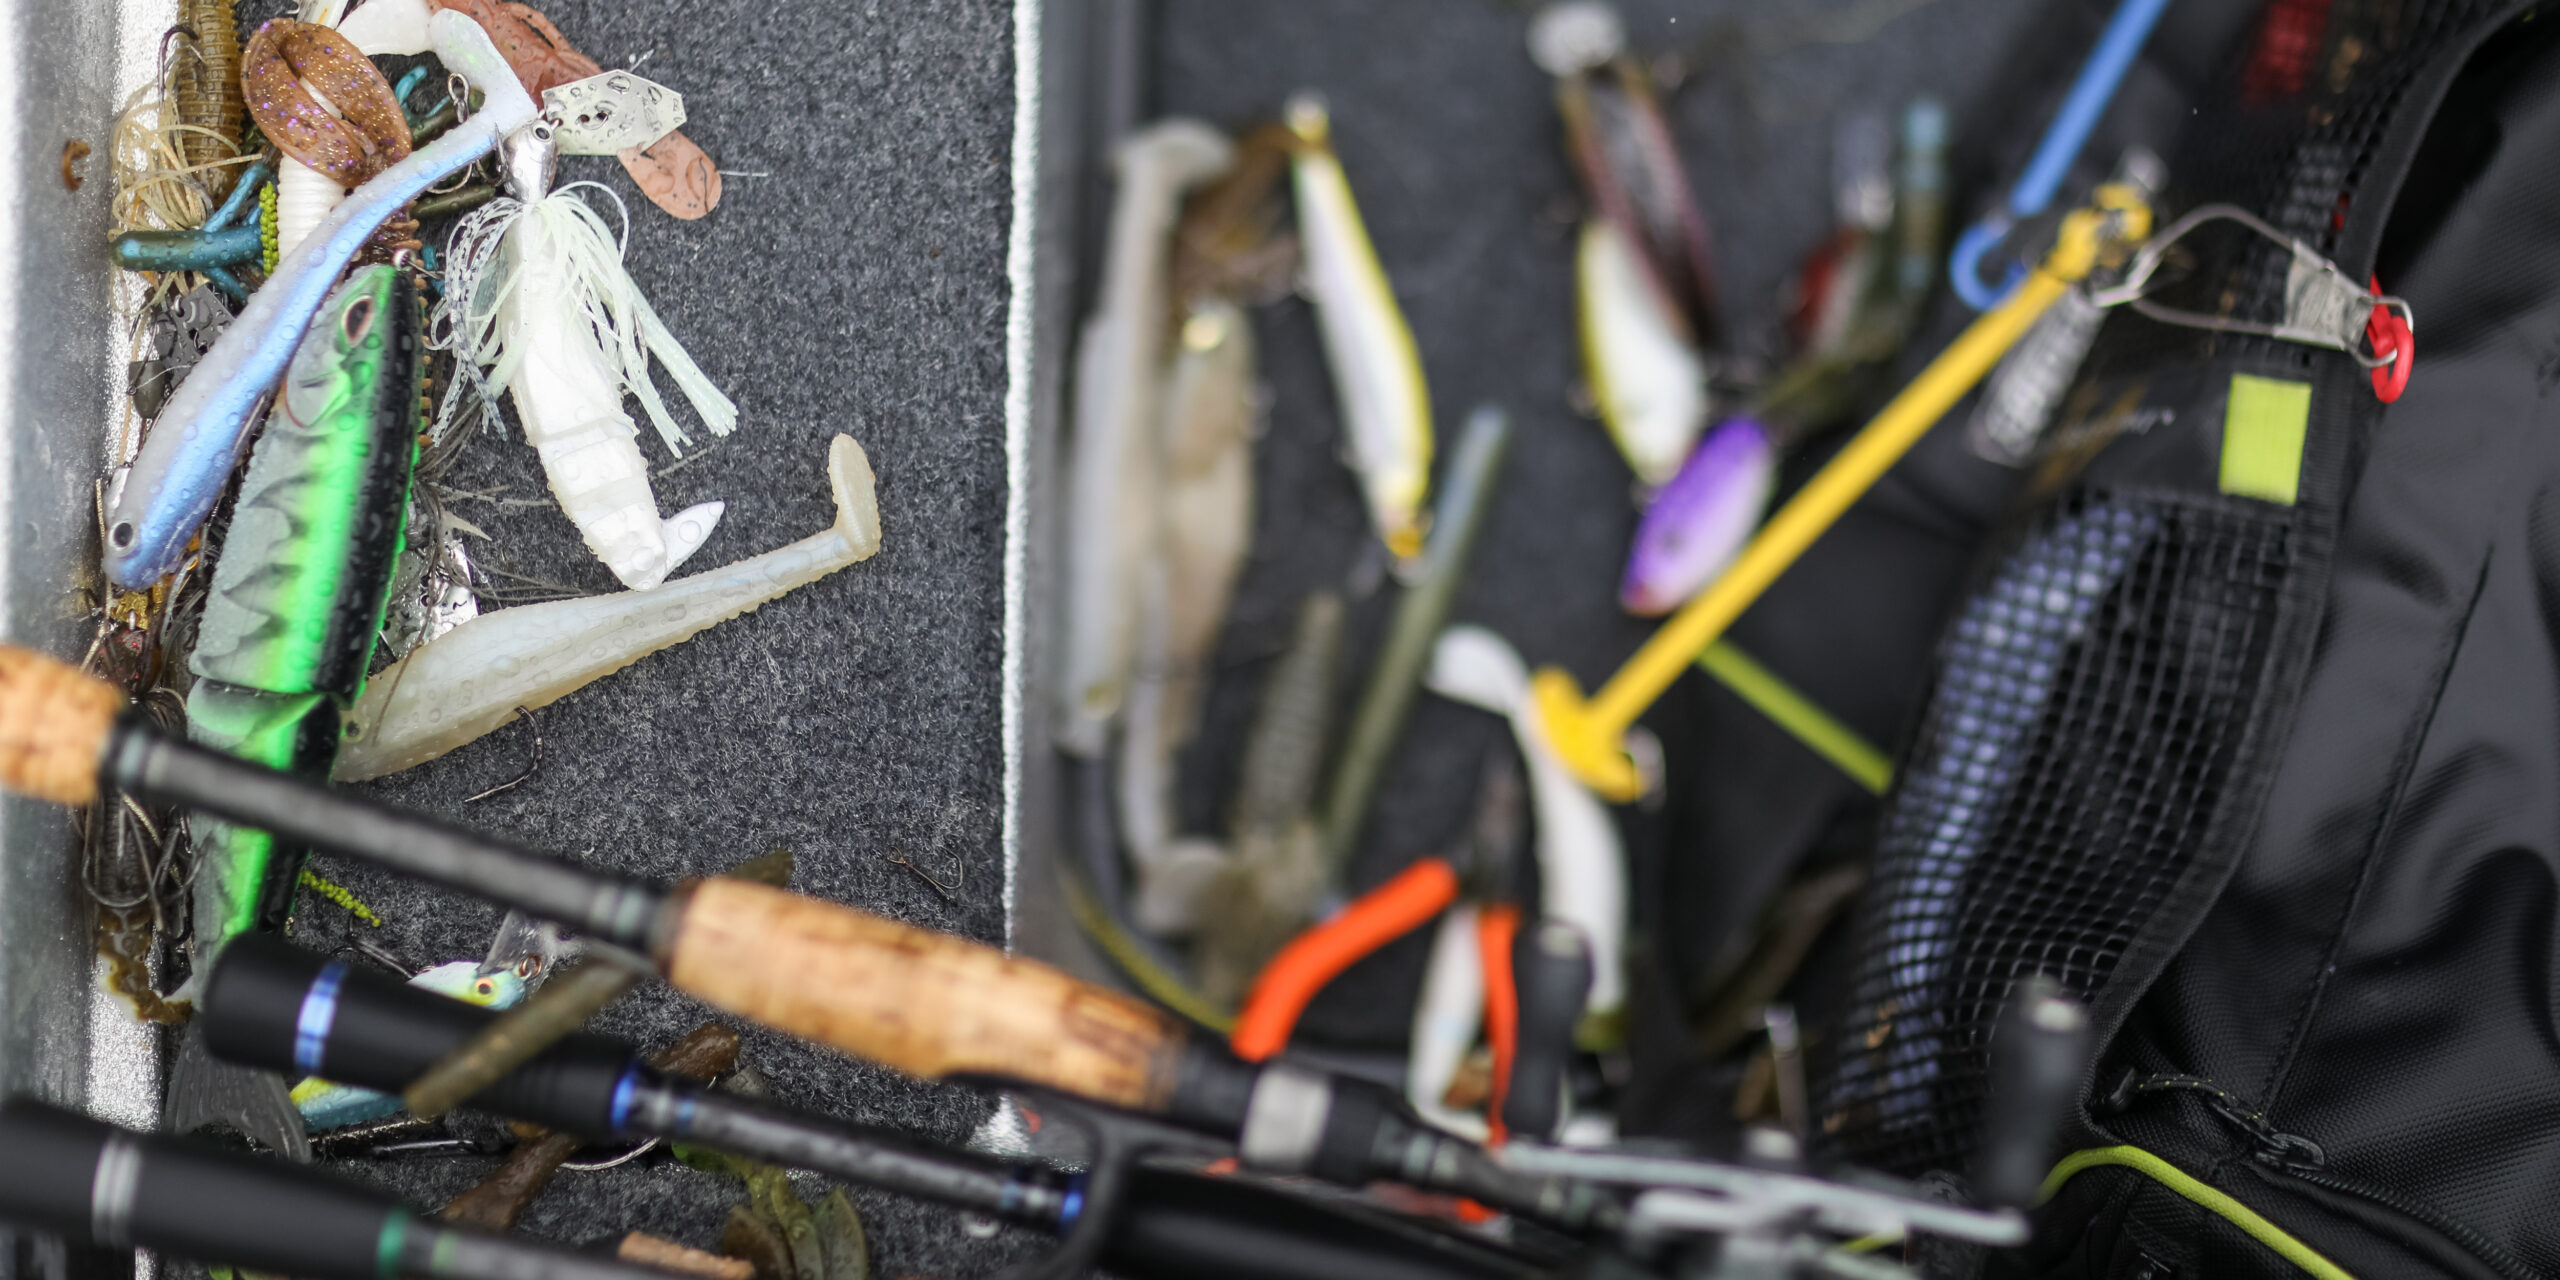 Top 10 baits and patterns from Lake Chickamauga - Major League Fishing